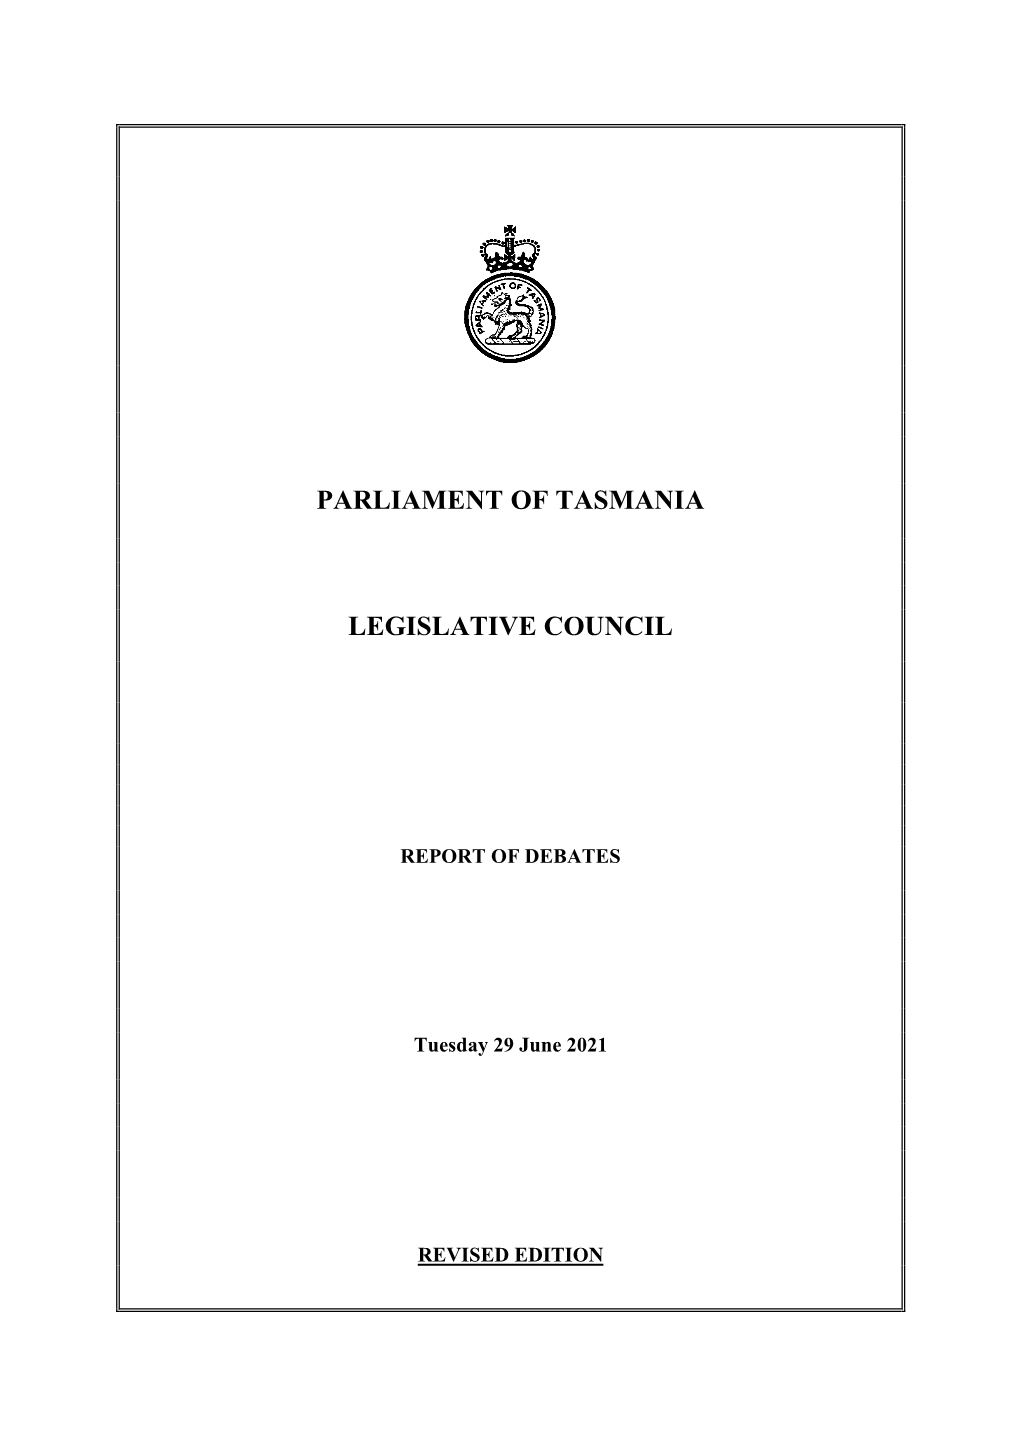 Legislative Council Tuesday 29 June 2021